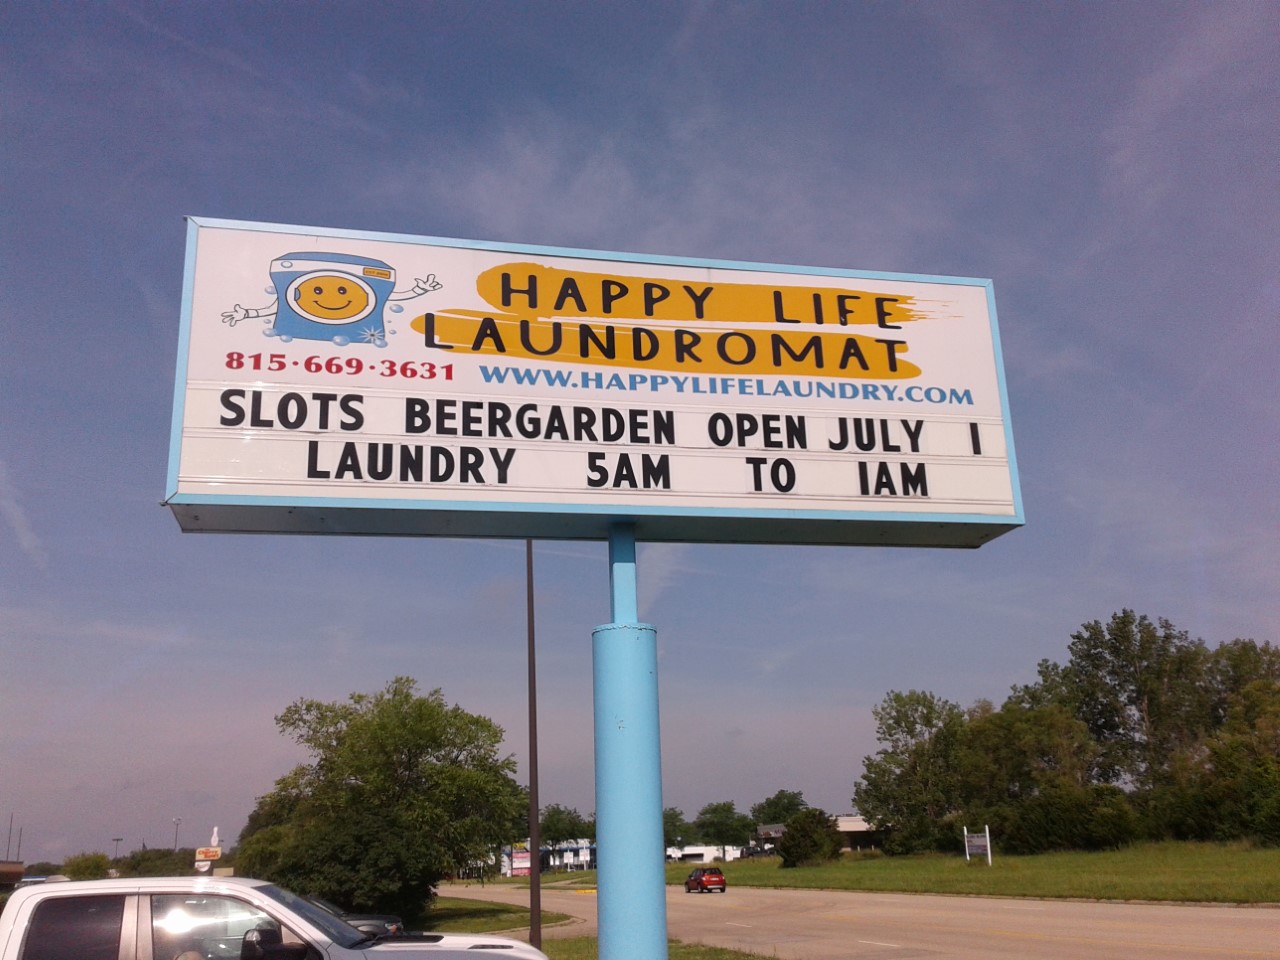 Happy Life Laundromat of Rockford